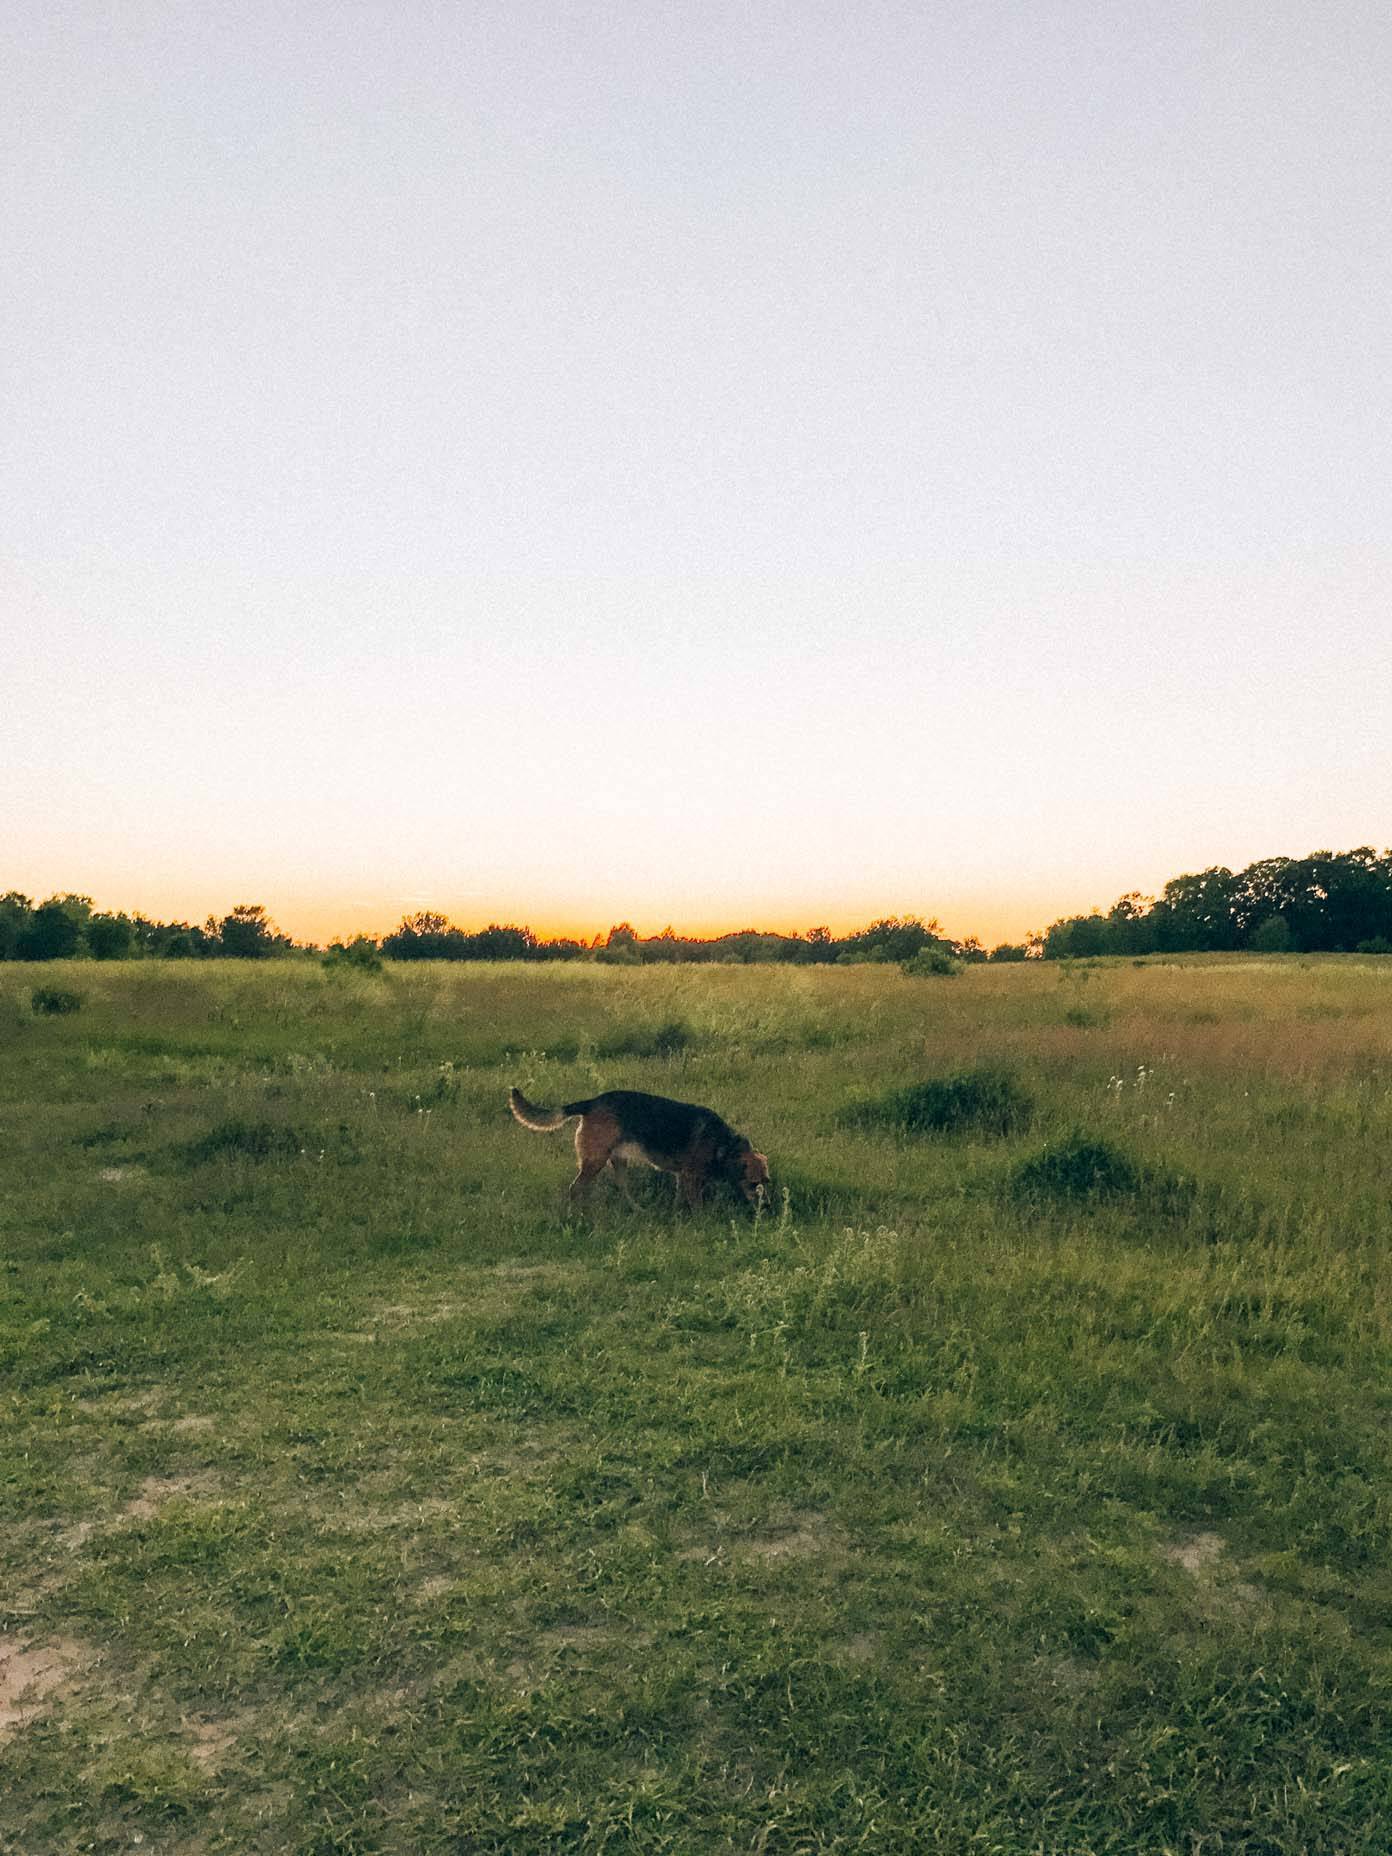 A dog walking in a field.